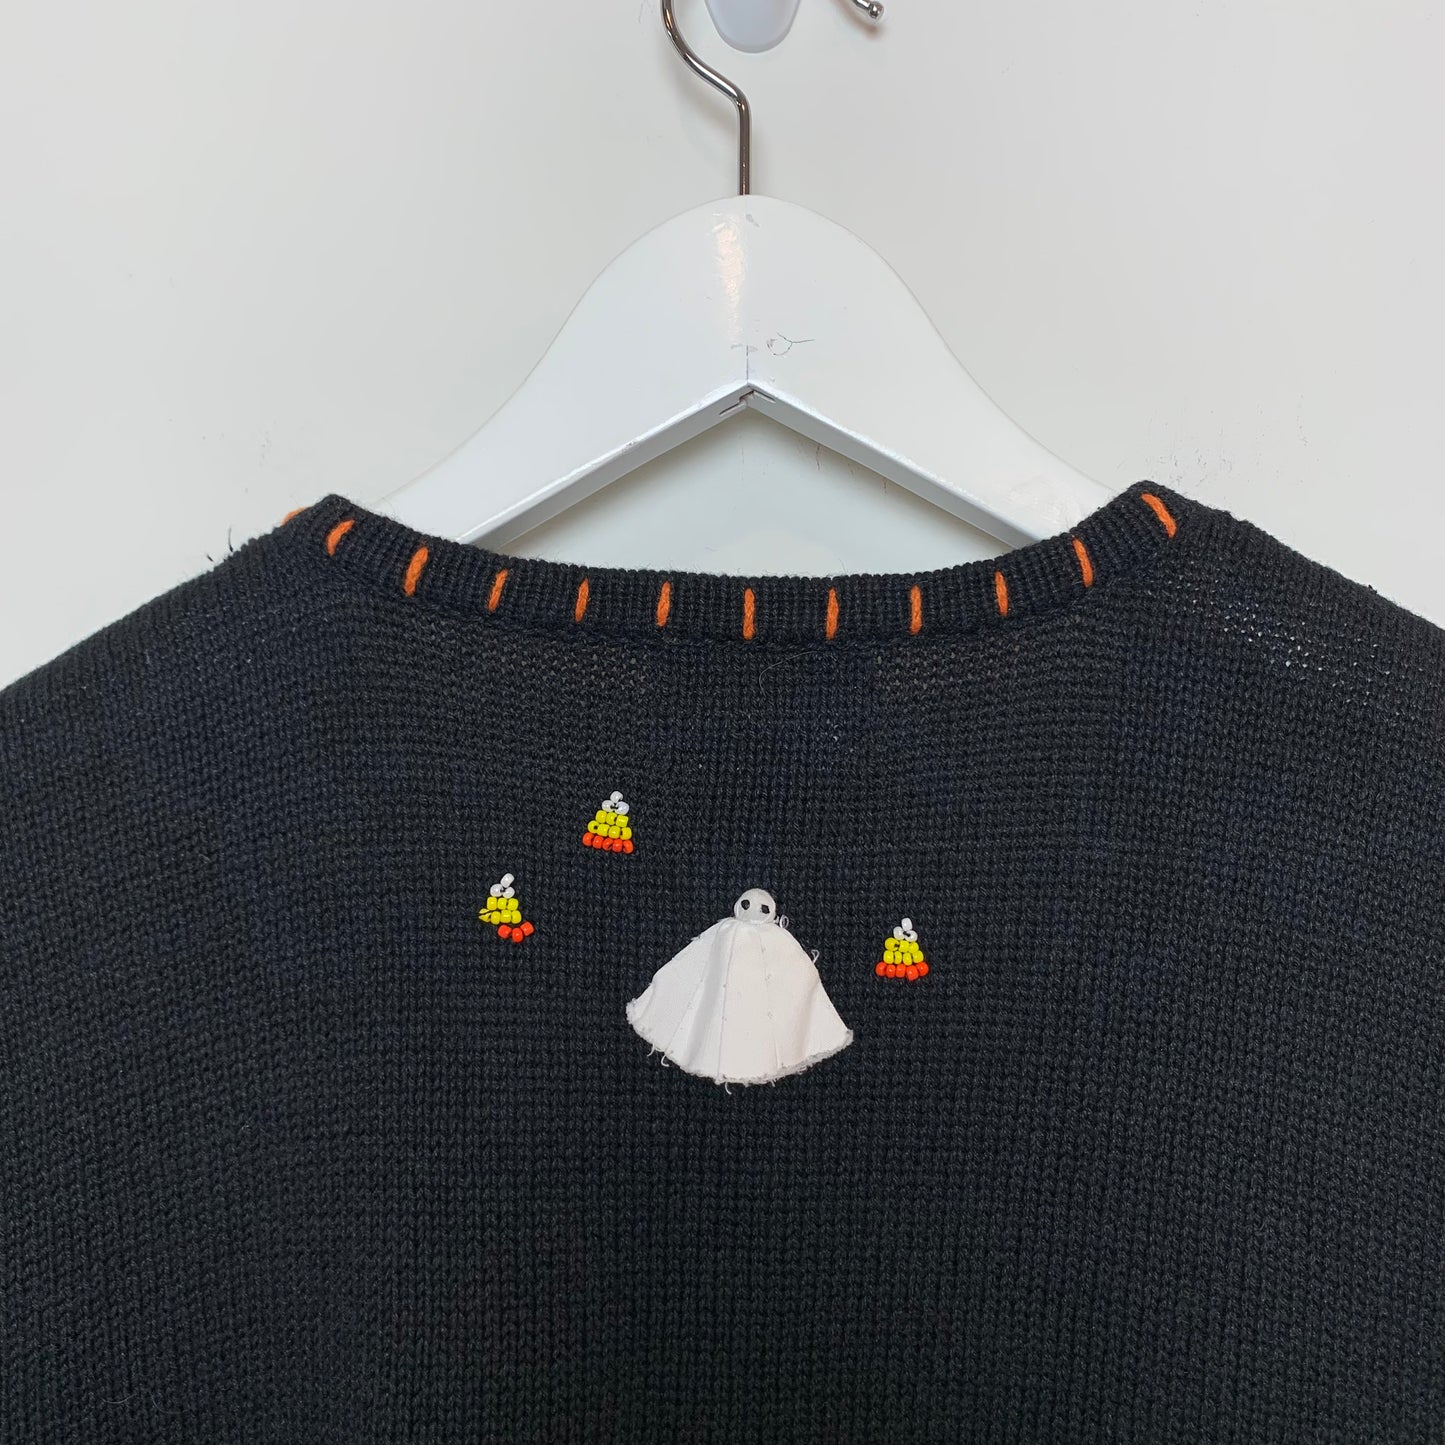 Vintage Designers Originals Studio Halloween Sweater Vest 3X